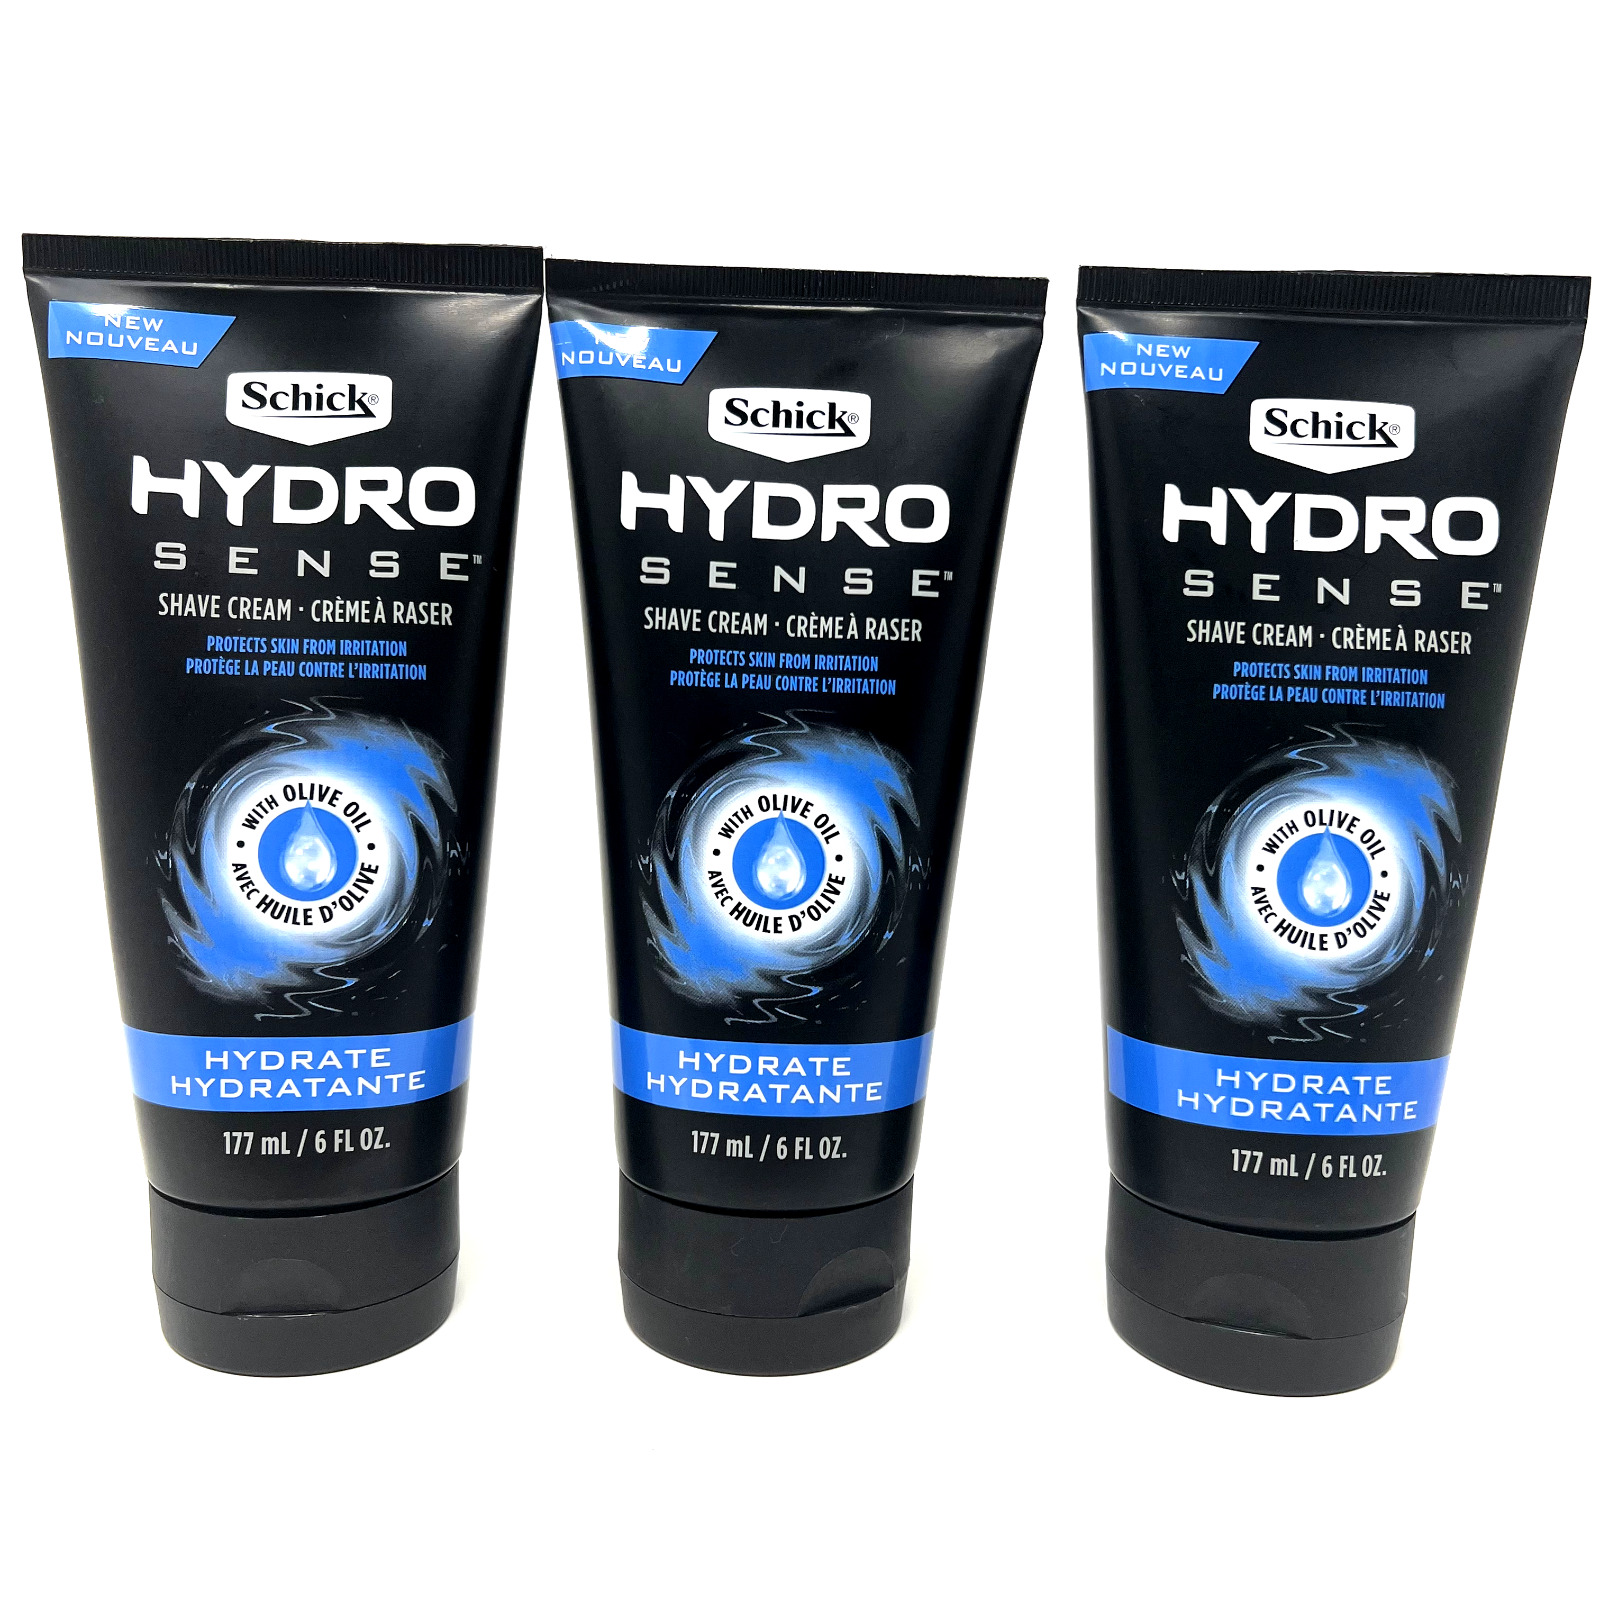 Schick Hydro Sense Hydrate Shave Cream with Olive Oil 6 oz. (2 